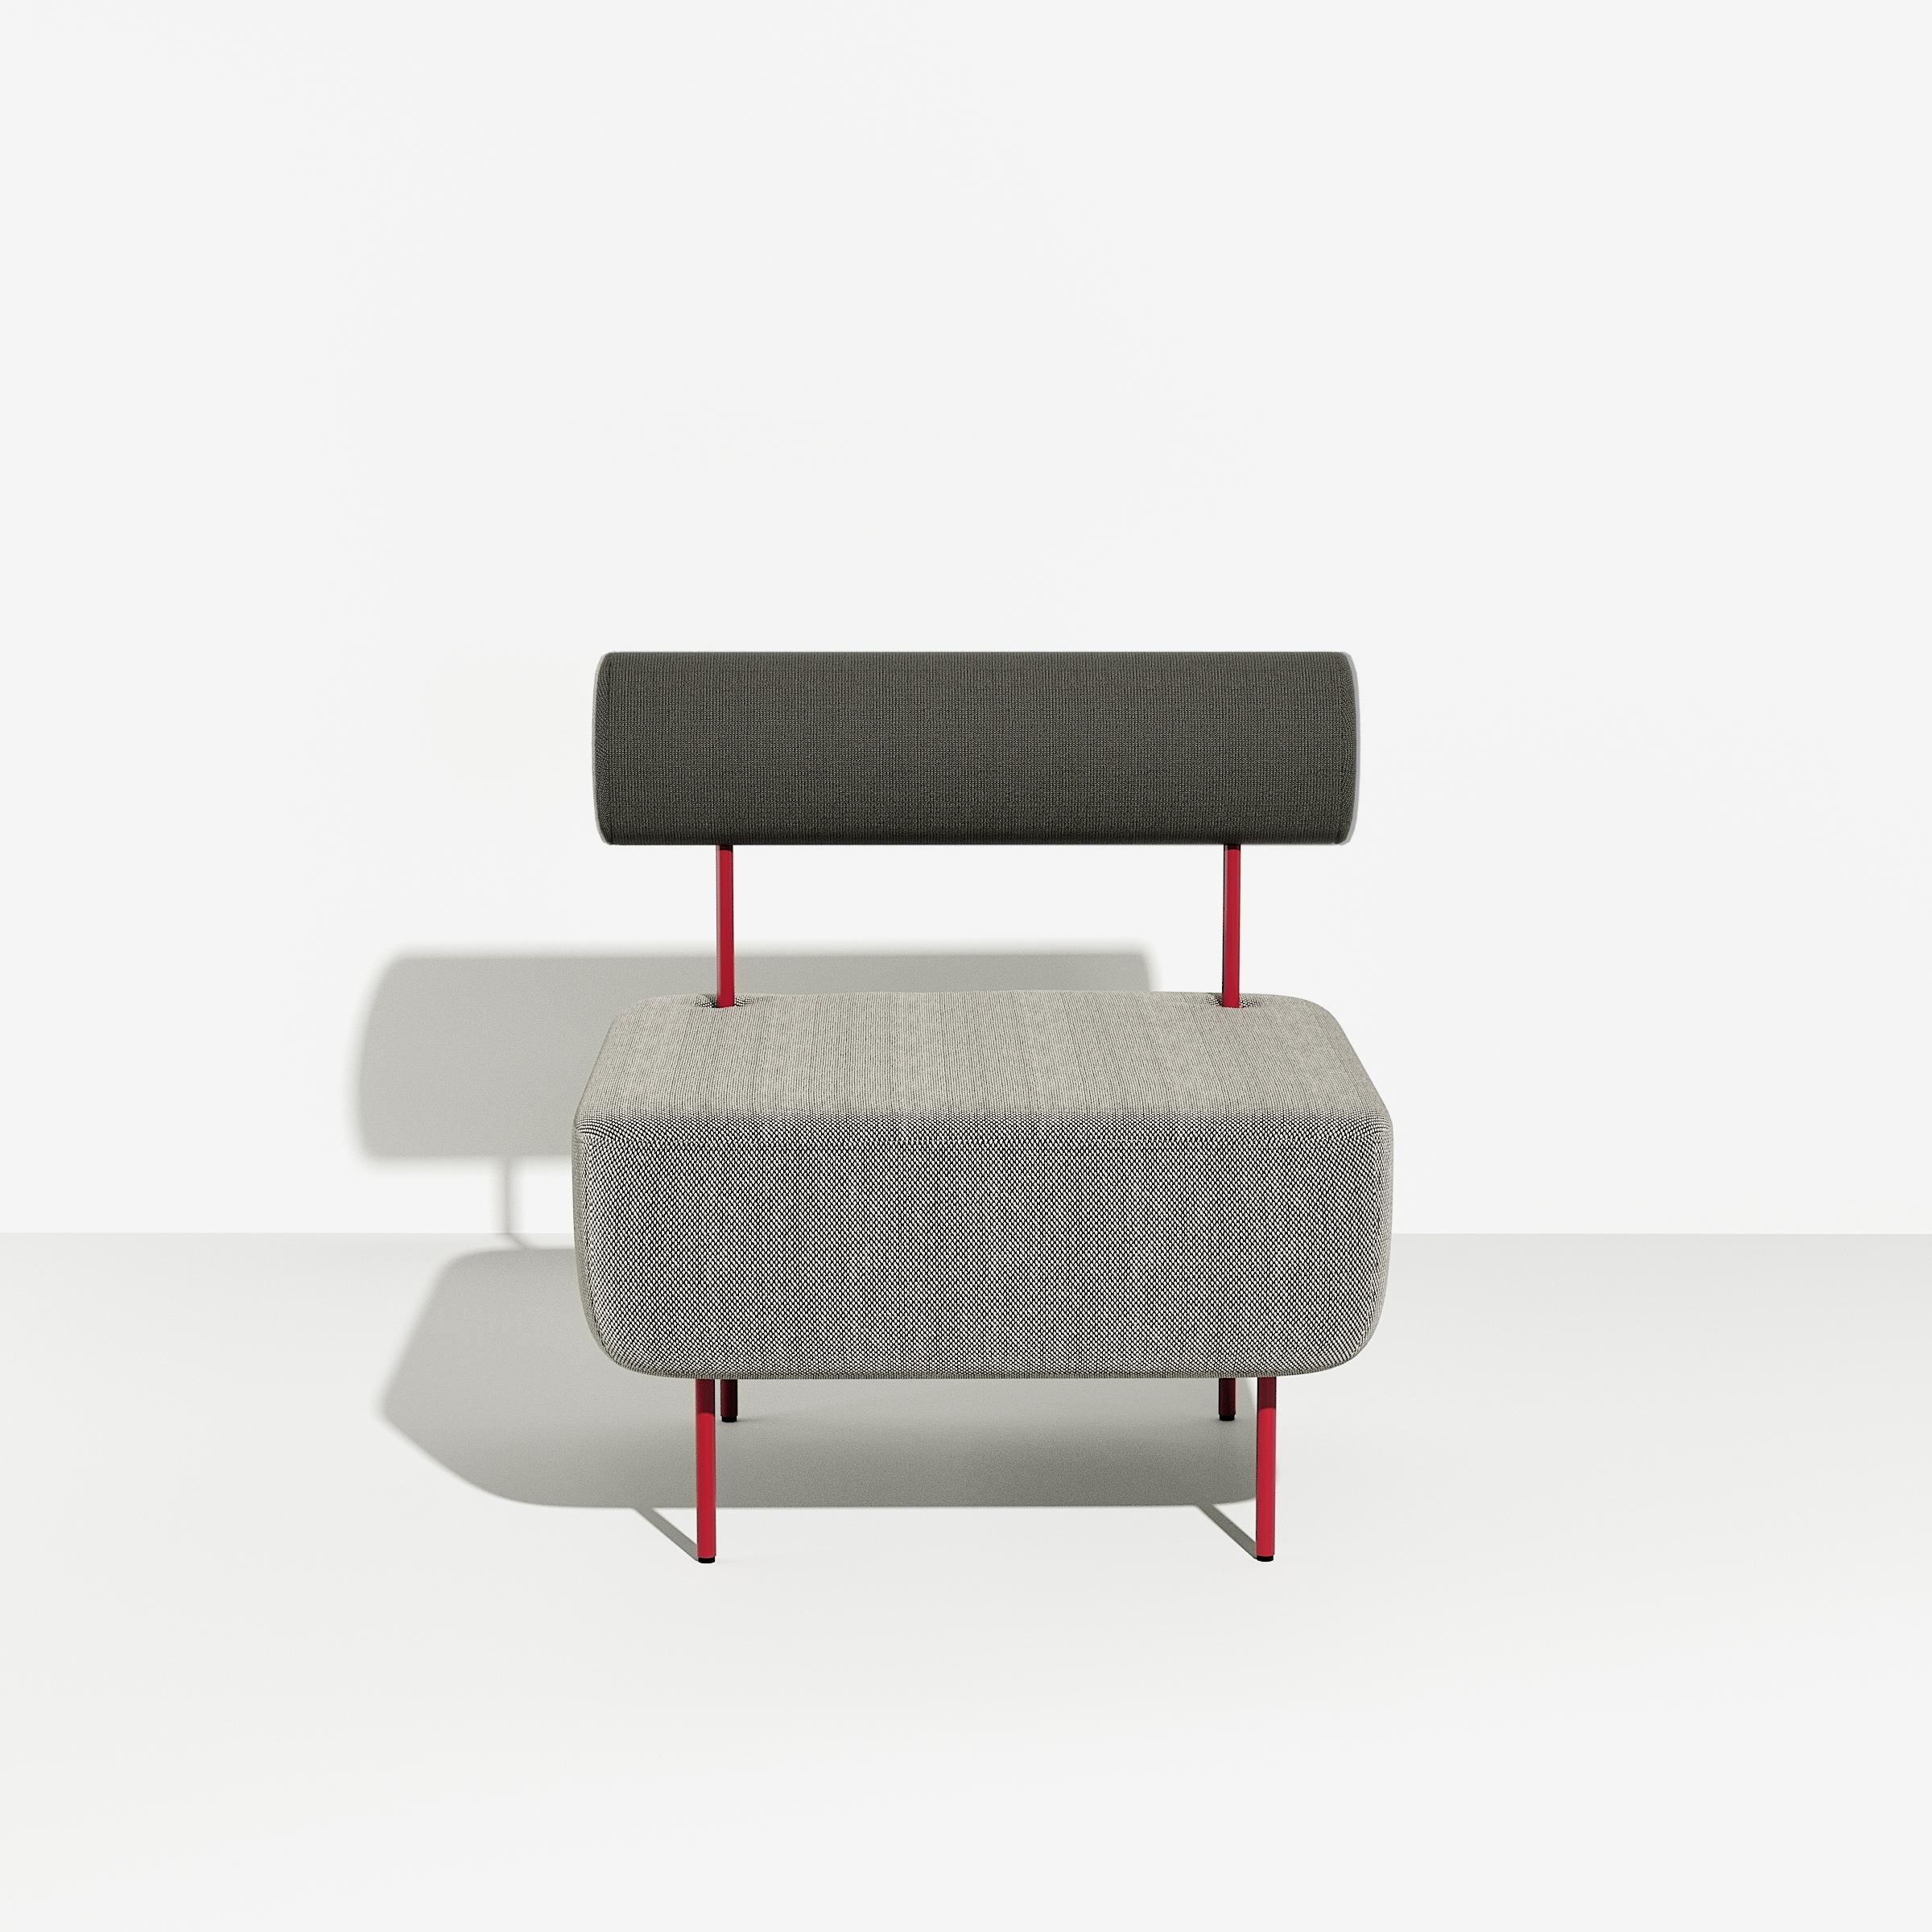 Petite Friture Medium Hoff Armchair in Grey-black by Morten & Jona, 2015

Hoff, créée par le duo de designers Morten & Jonas, est une collection de deux tabourets et de deux fauteuils modulaires. Ils peuvent être combinés pour former un canapé ainsi